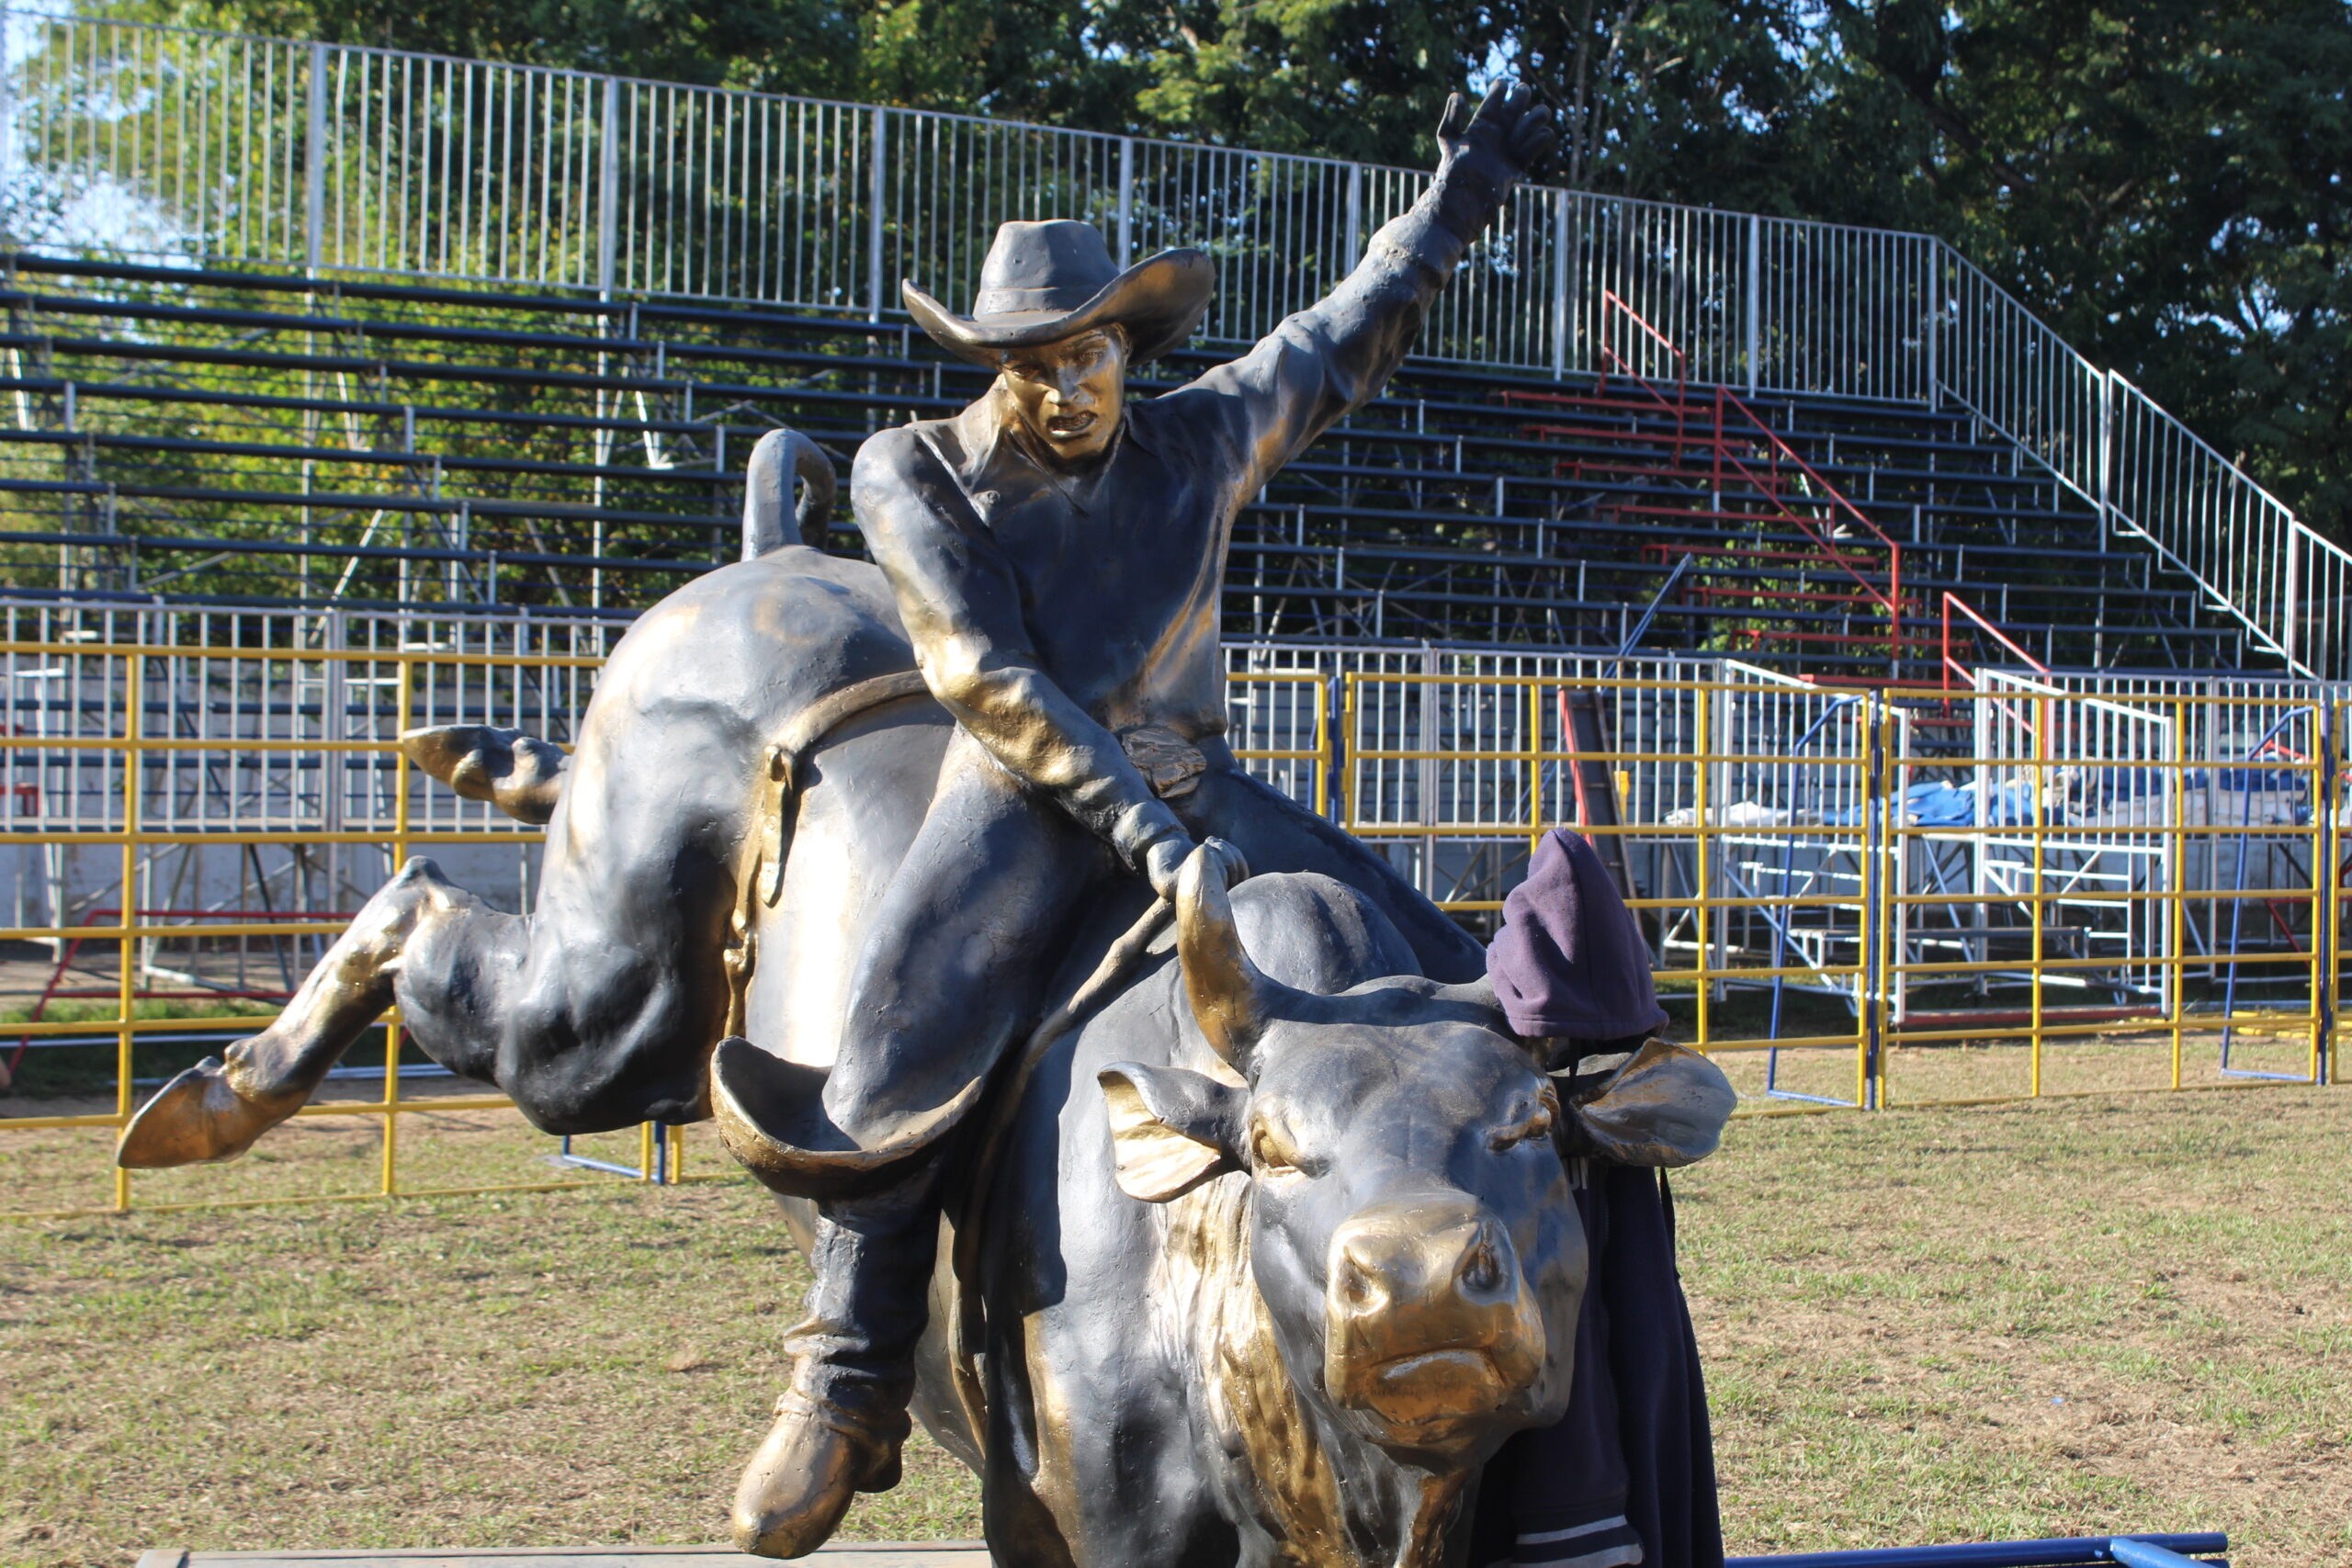 Dj Magrão Rodeio - - 27 de Agosto - Dia do Peão de Boiadeiro - Inspirado no  trabalho de manejo do gado em fazendas, o rodeio esportivo surgiu como  evento há mais